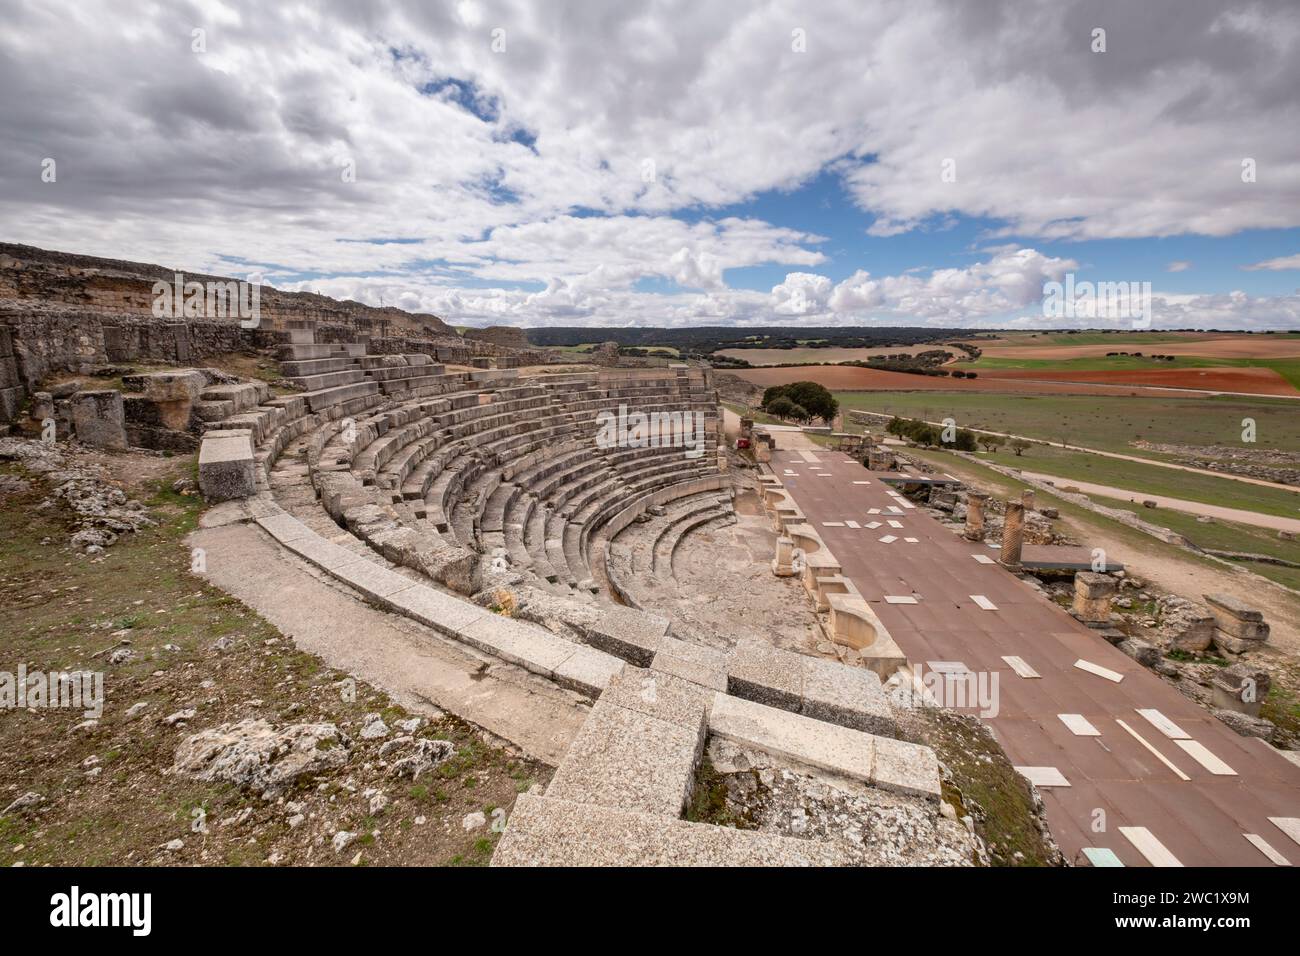 Teatro romano, parque arqueológico de Segóbriga, Saelices, Cuenca, Castilla-La Mancha, Spain Stock Photo